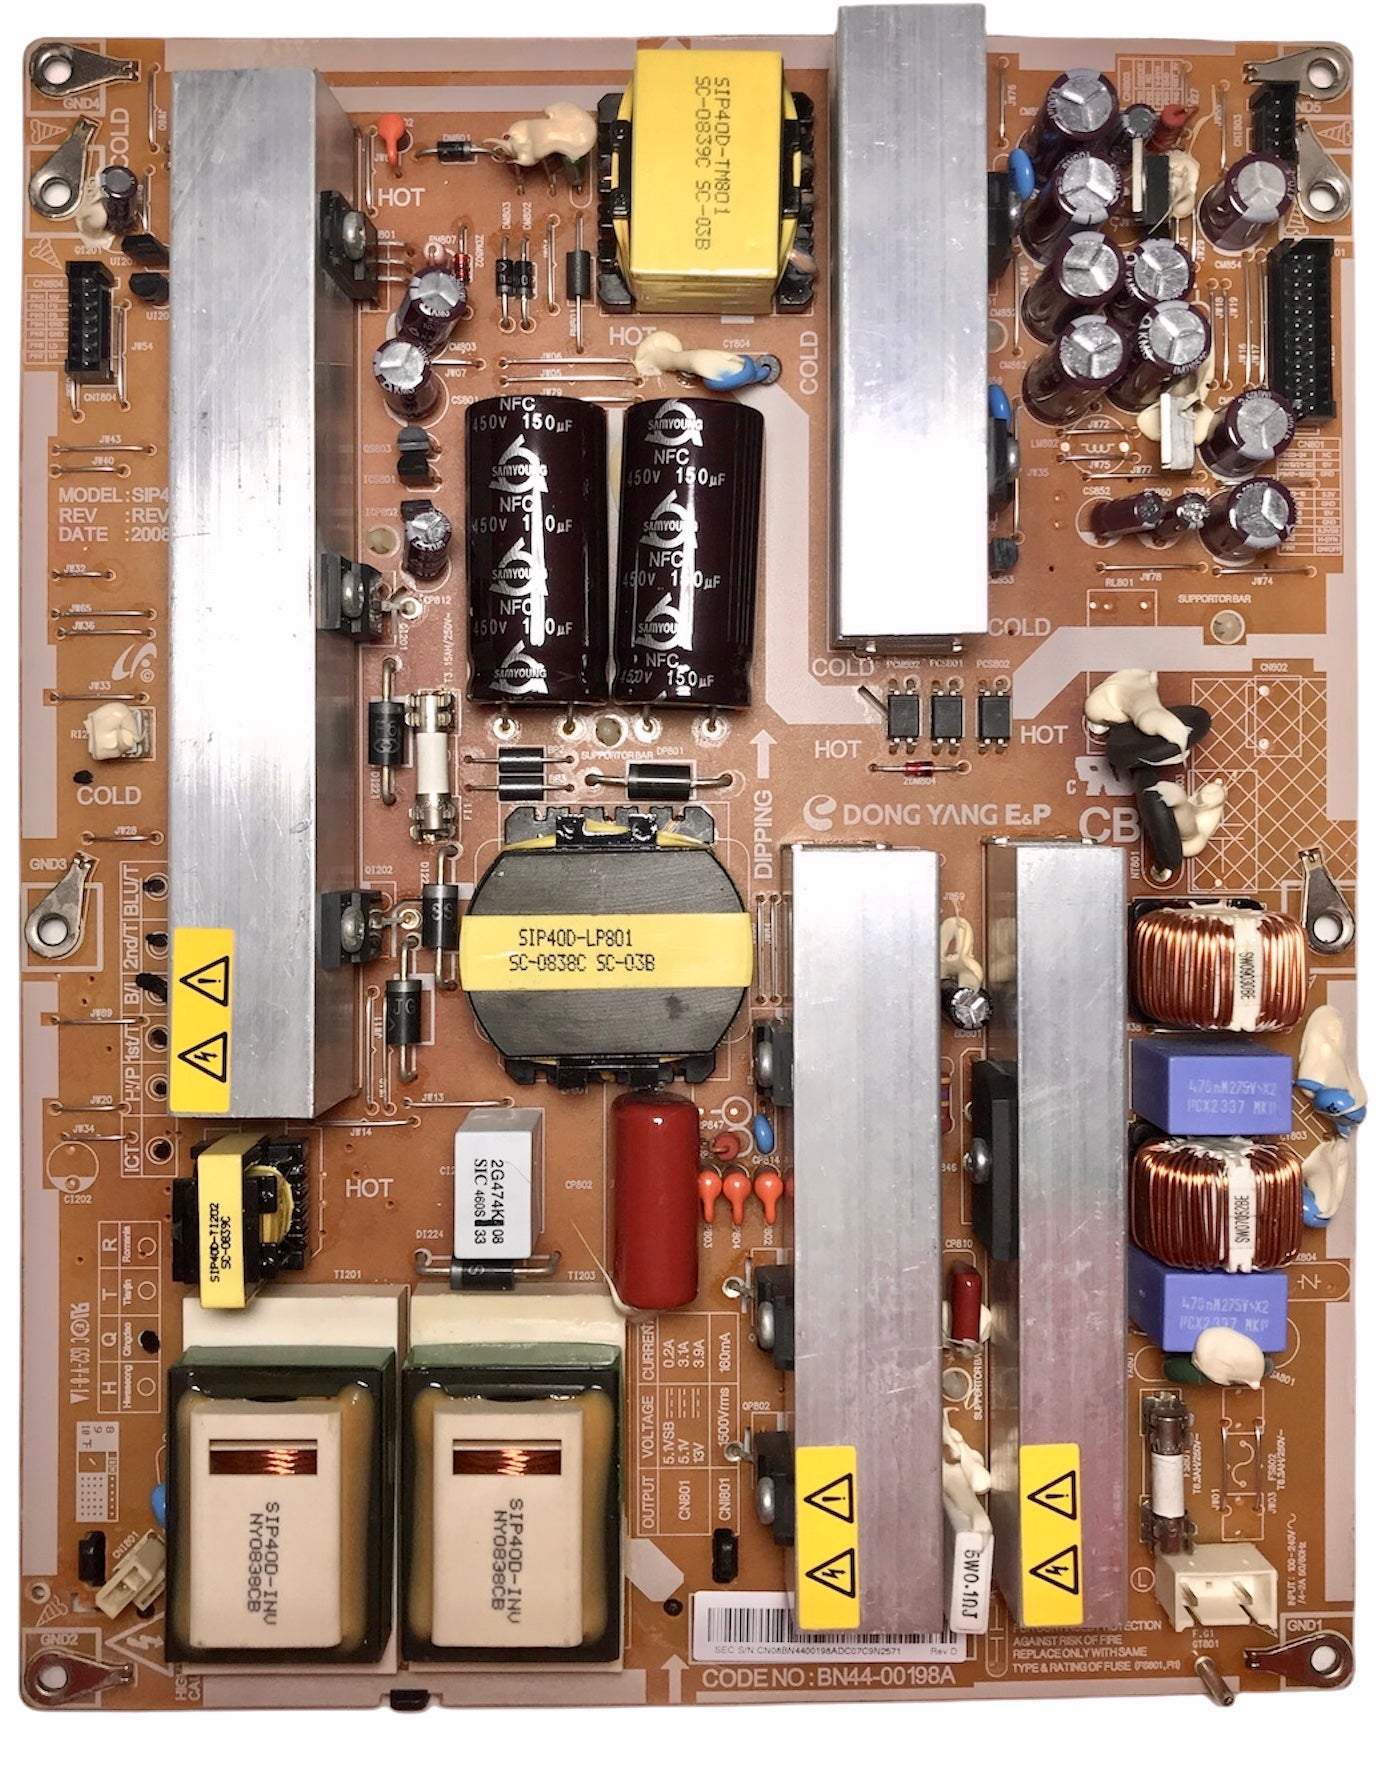 Samsung BN44-00197A / BN44-00198A / BN44-00199A Power Supply / Backlight Inverter